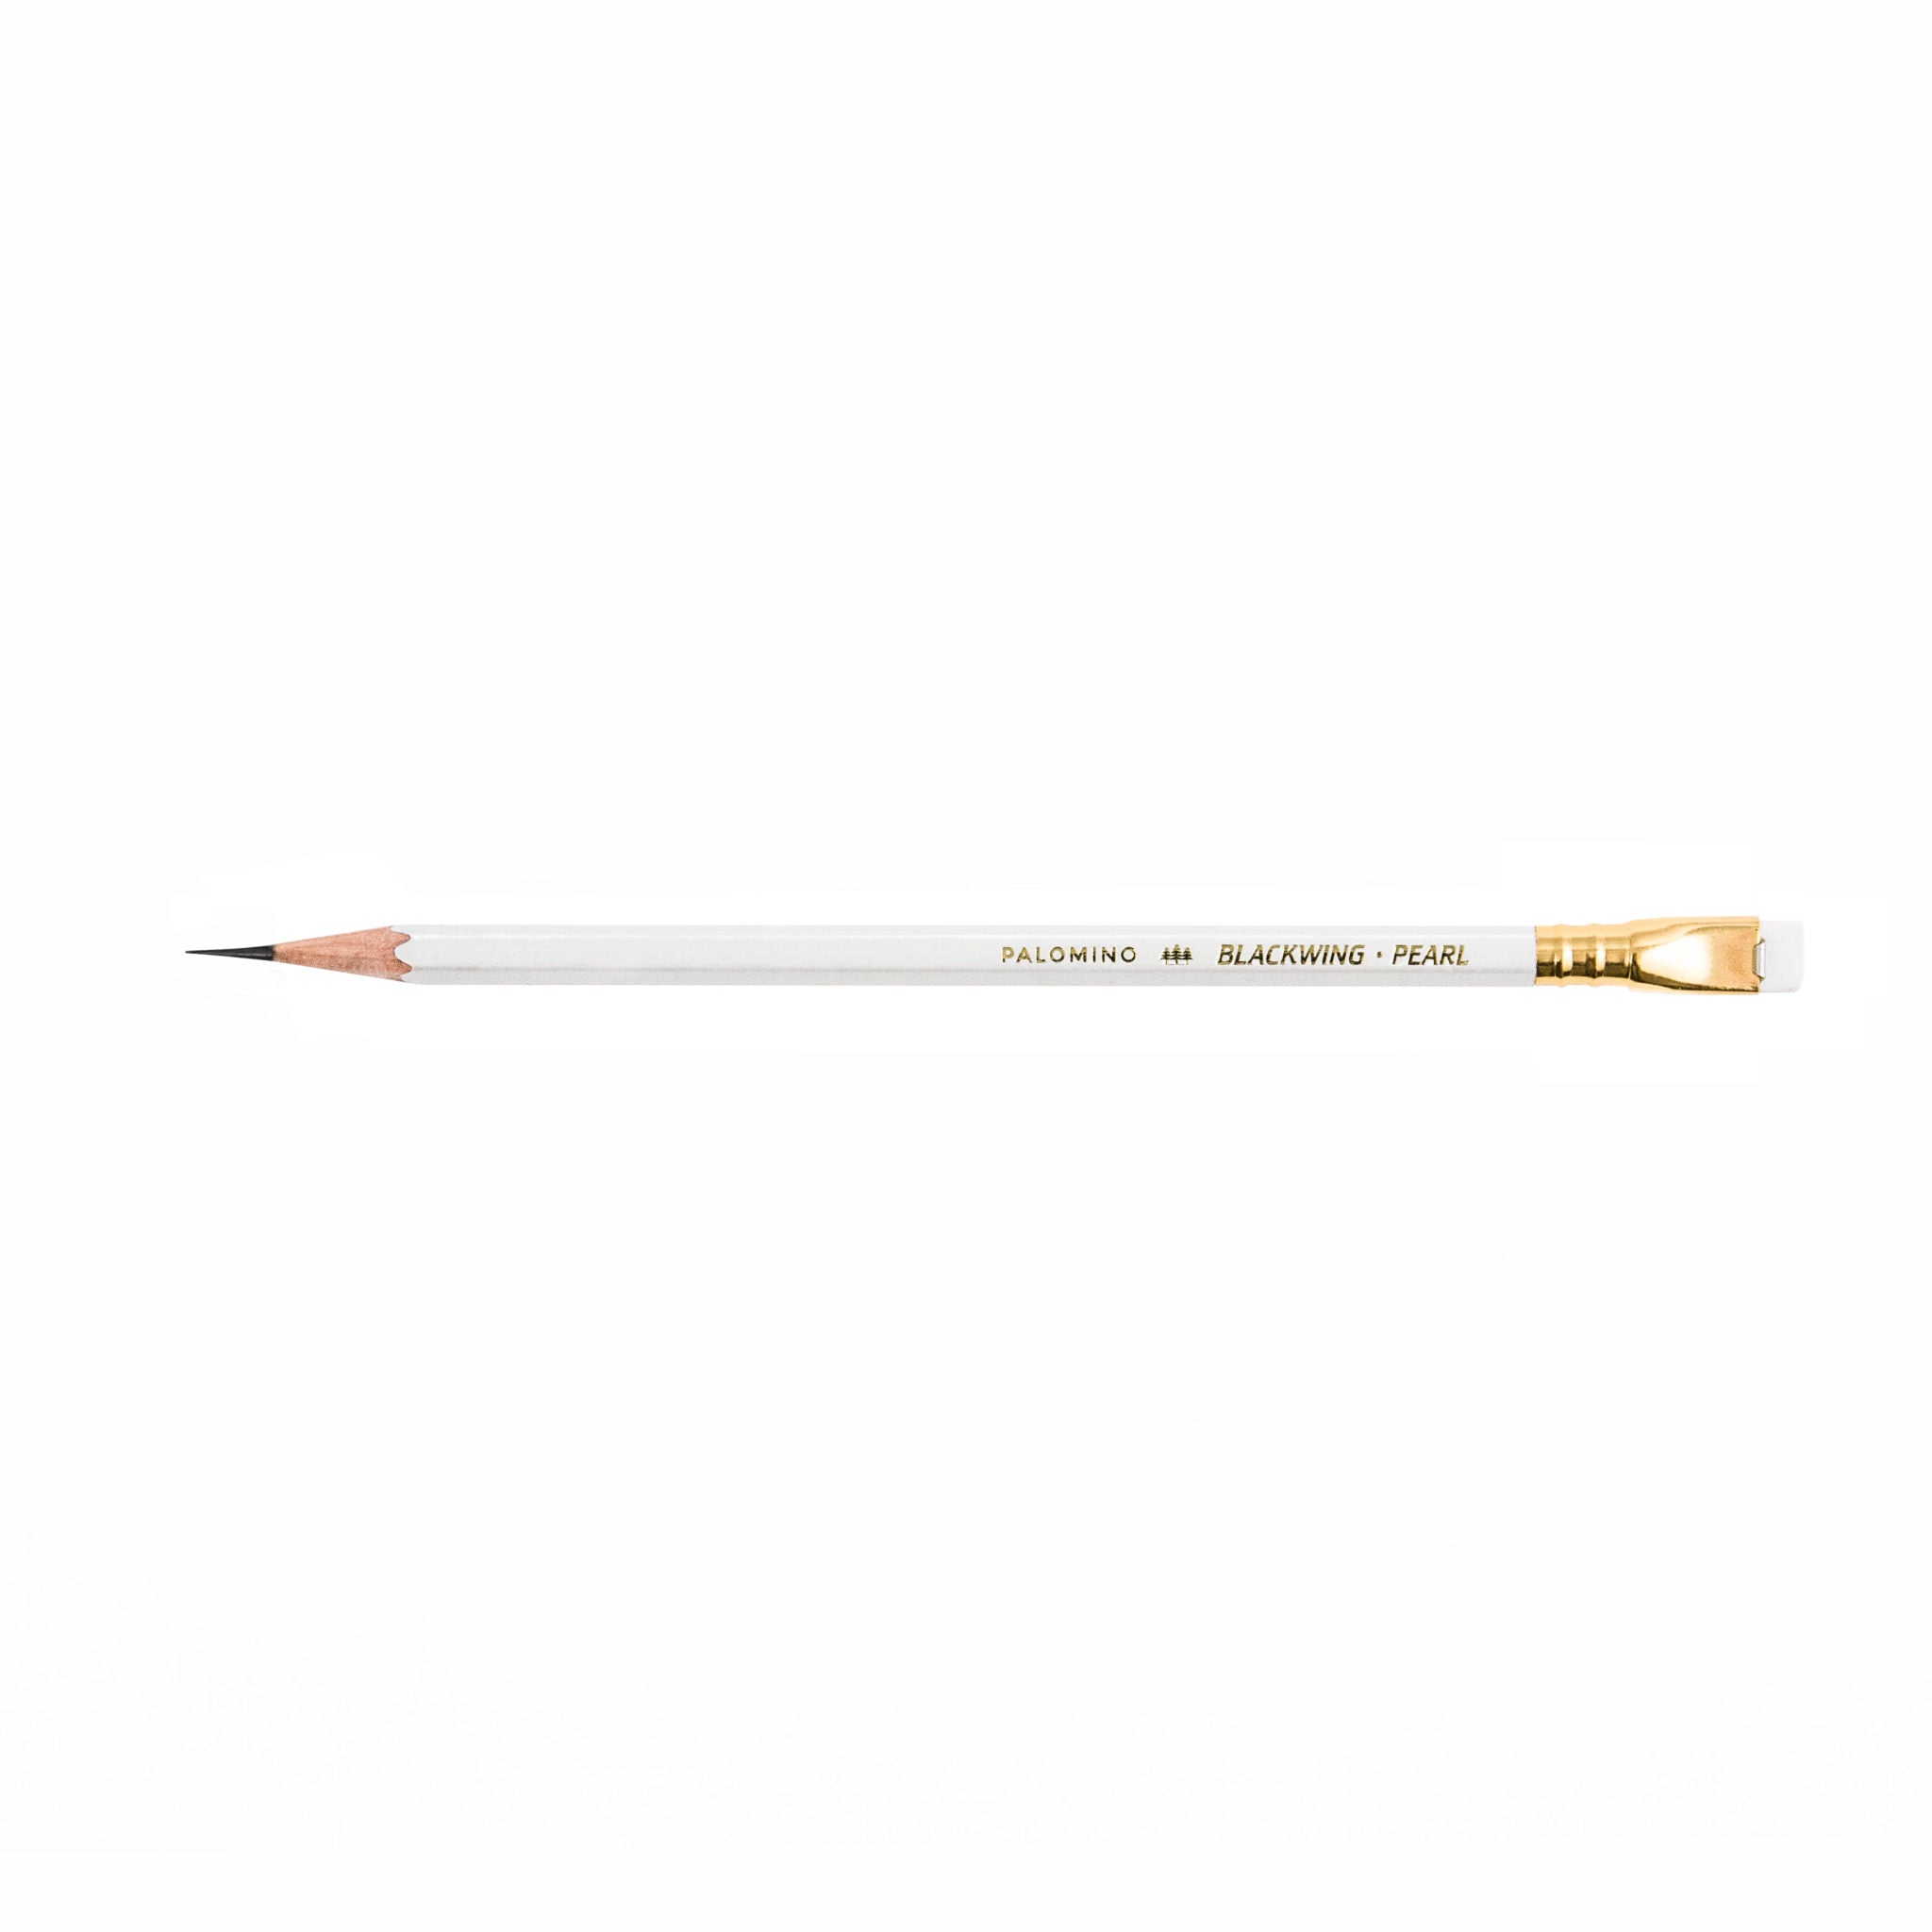 Blackwing pencils black, soft graphite, (set of 12)